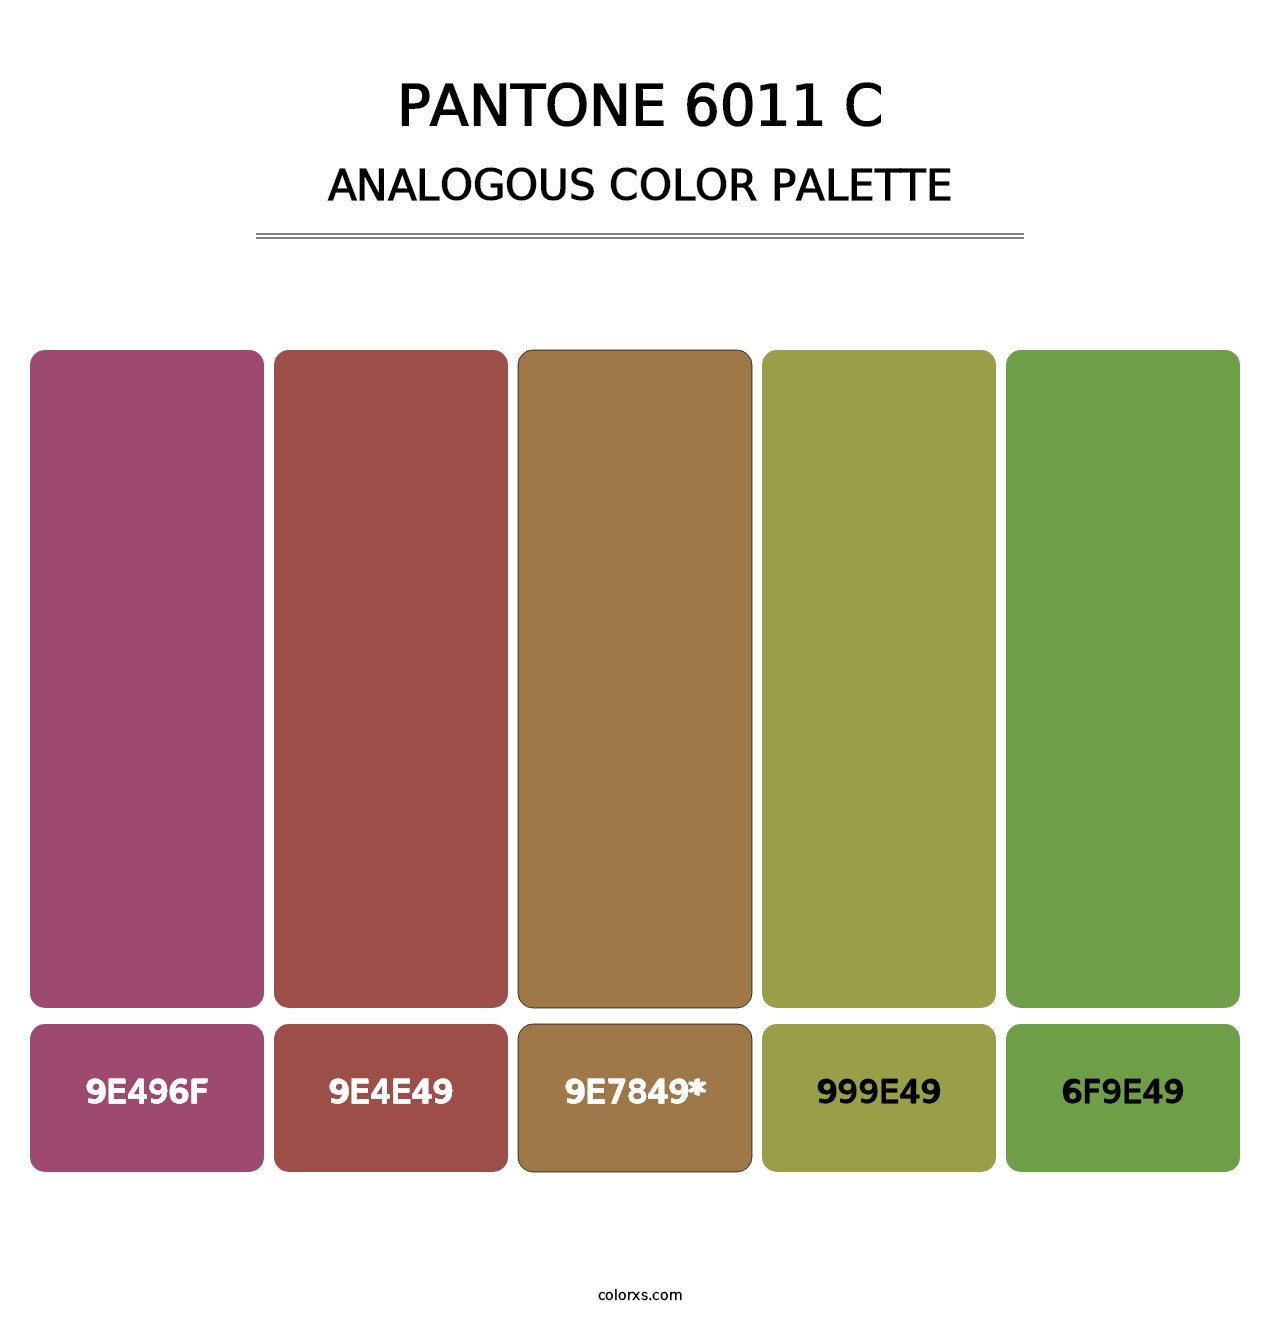 PANTONE 6011 C - Analogous Color Palette